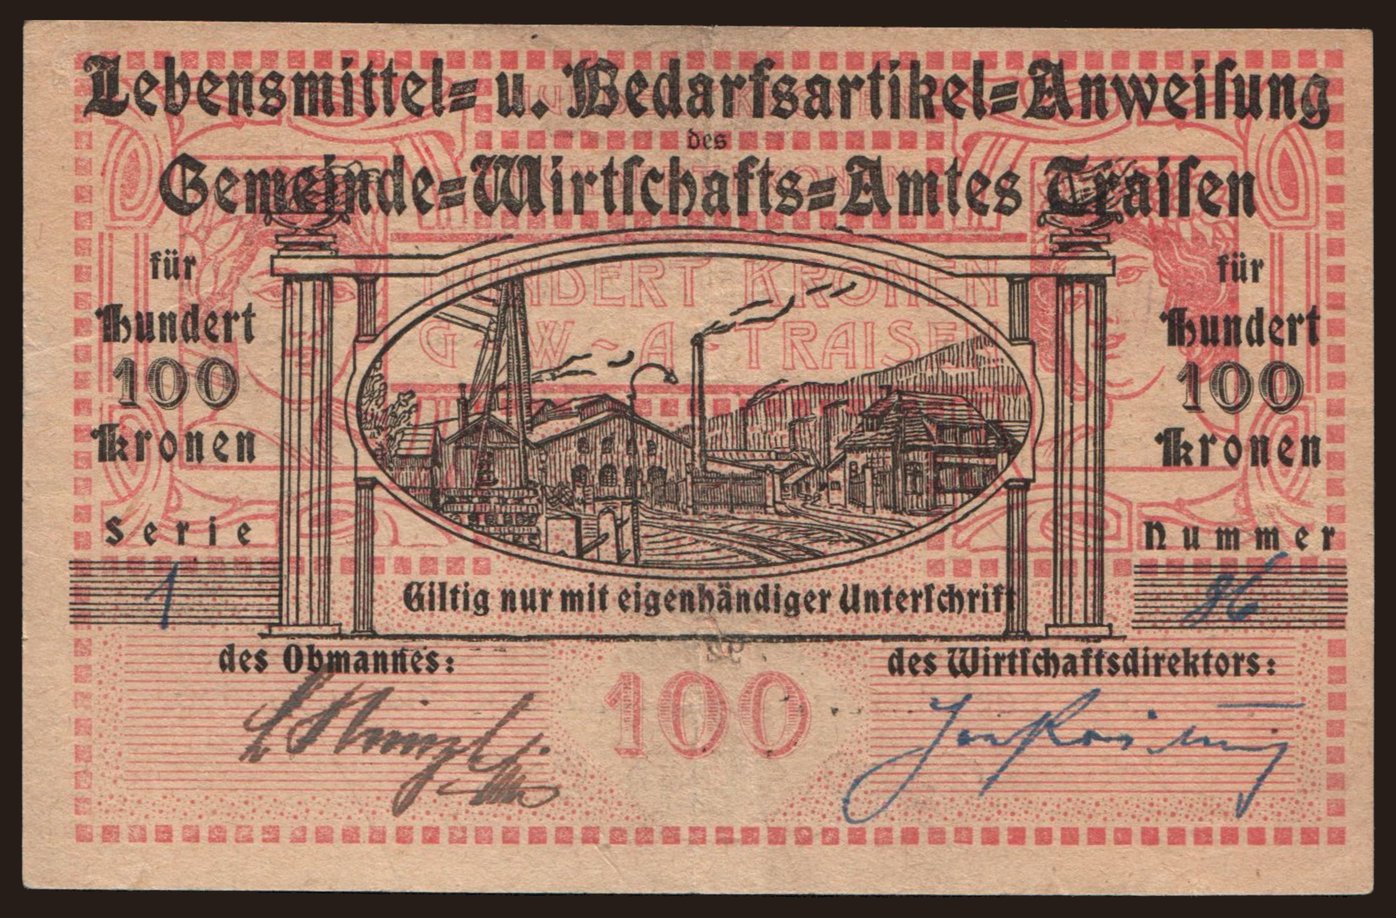 Traisen/ Gemeinde-Wirtschaftsamt, 100 Kronen, 1923